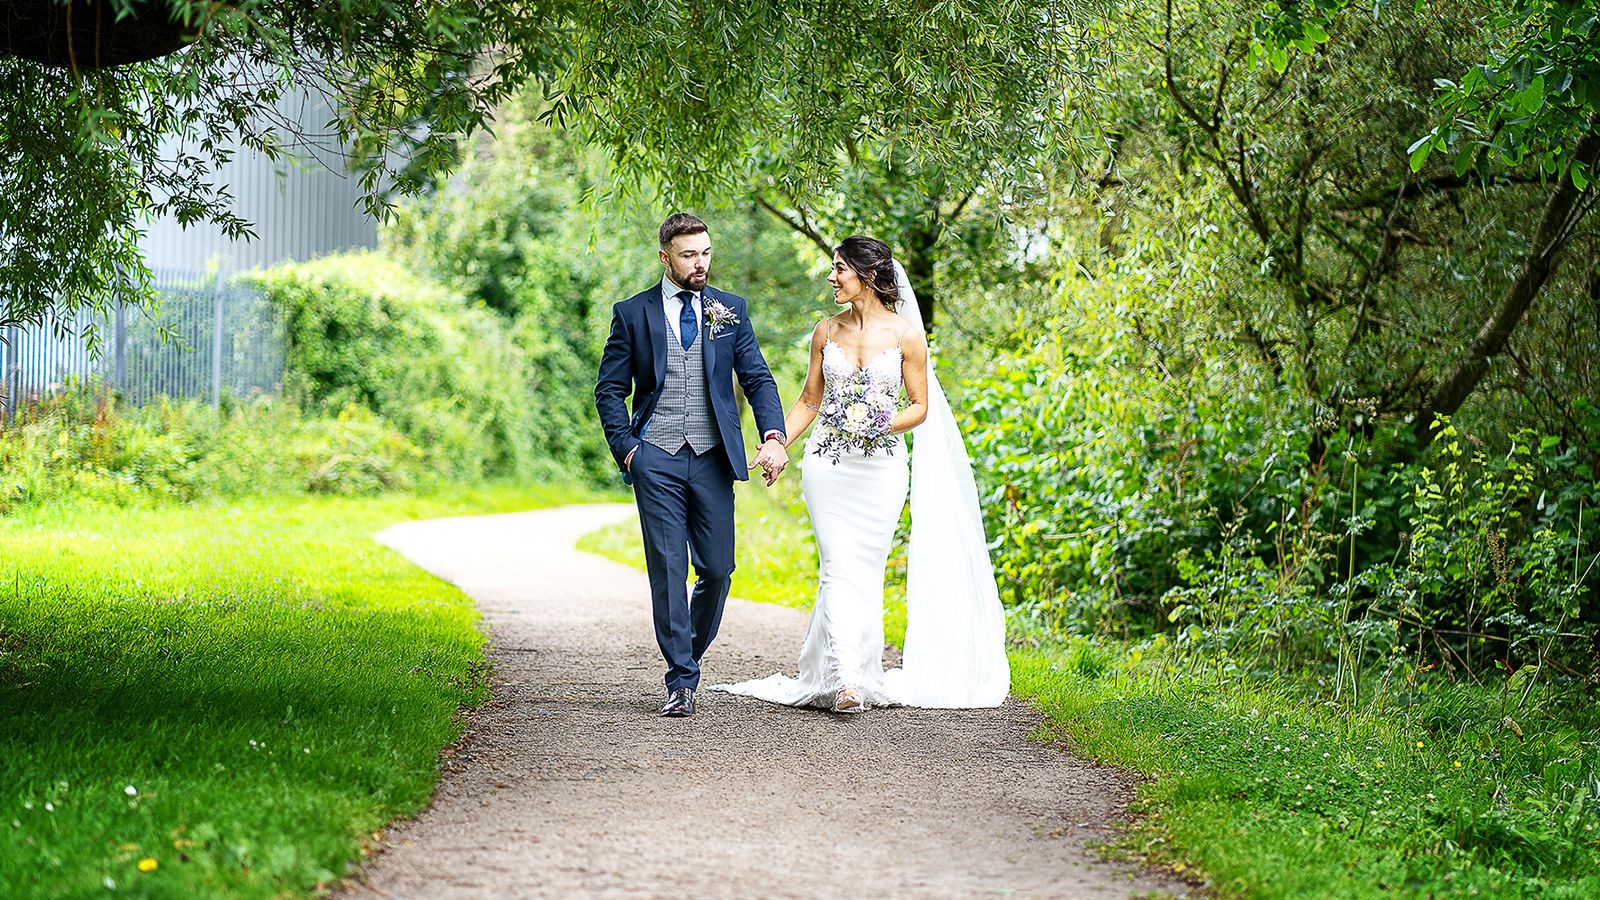 Bride and Groom Walking in Nature walkway